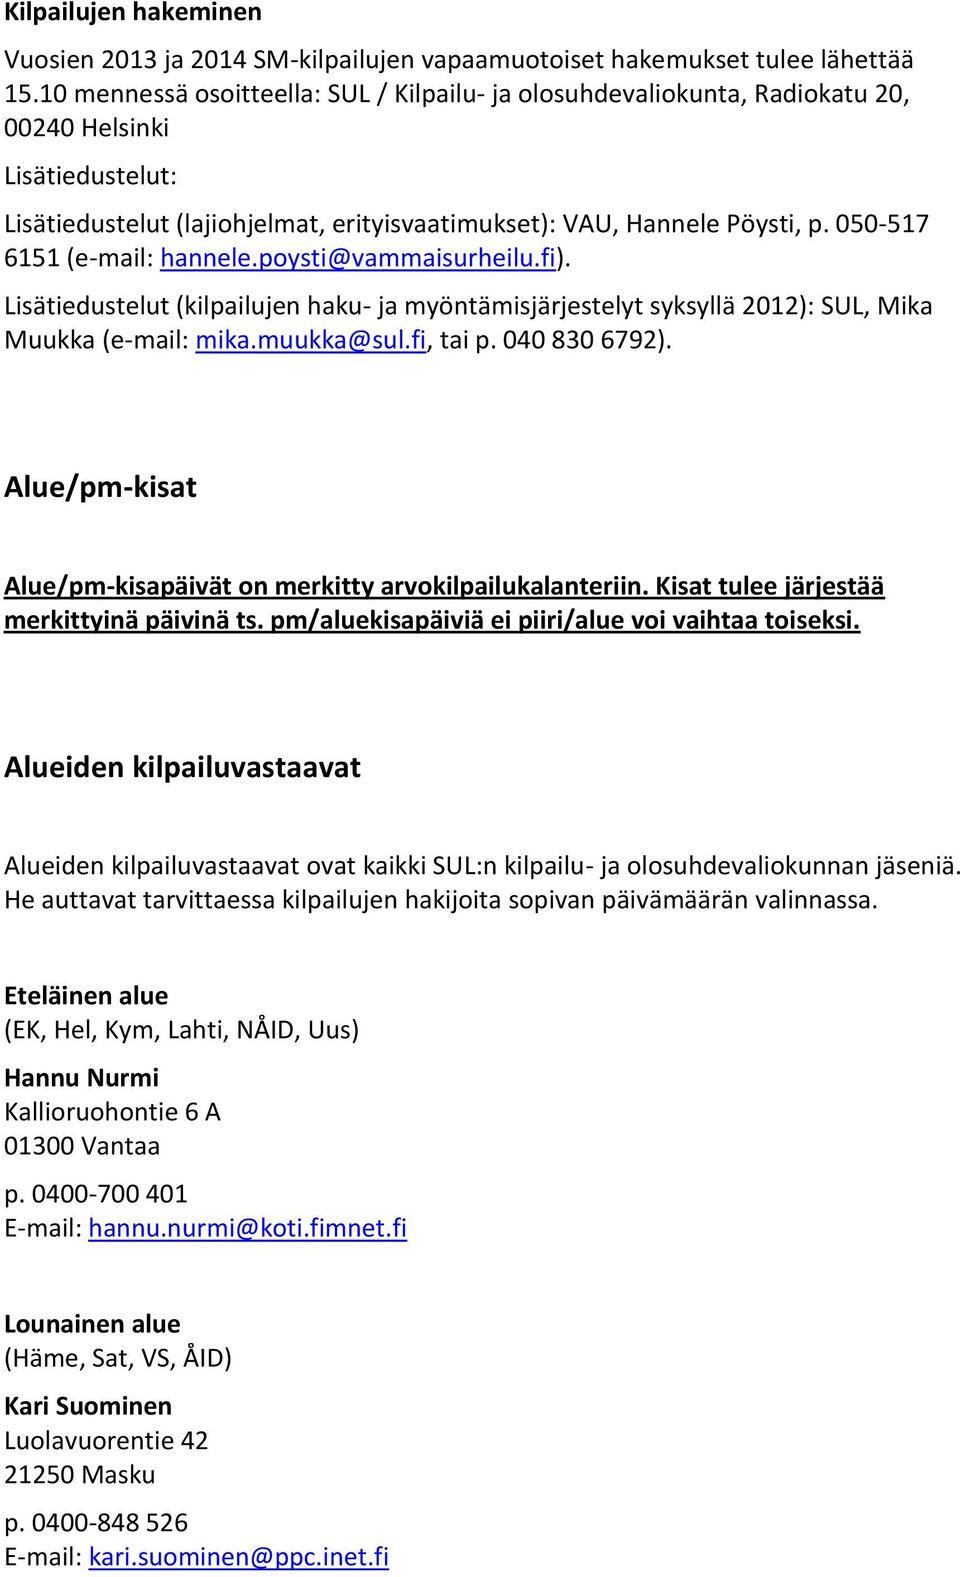 050-517 6151 (e-mail: hannele.poysti@vammaisurheilu.fi). Lisätiedustelut (kilpailujen haku- ja myöntämisjärjestelyt syksyllä 2012): SUL, Mika Muukka (e-mail: mika.muukka@sul.fi, tai p. 040 830 6792).